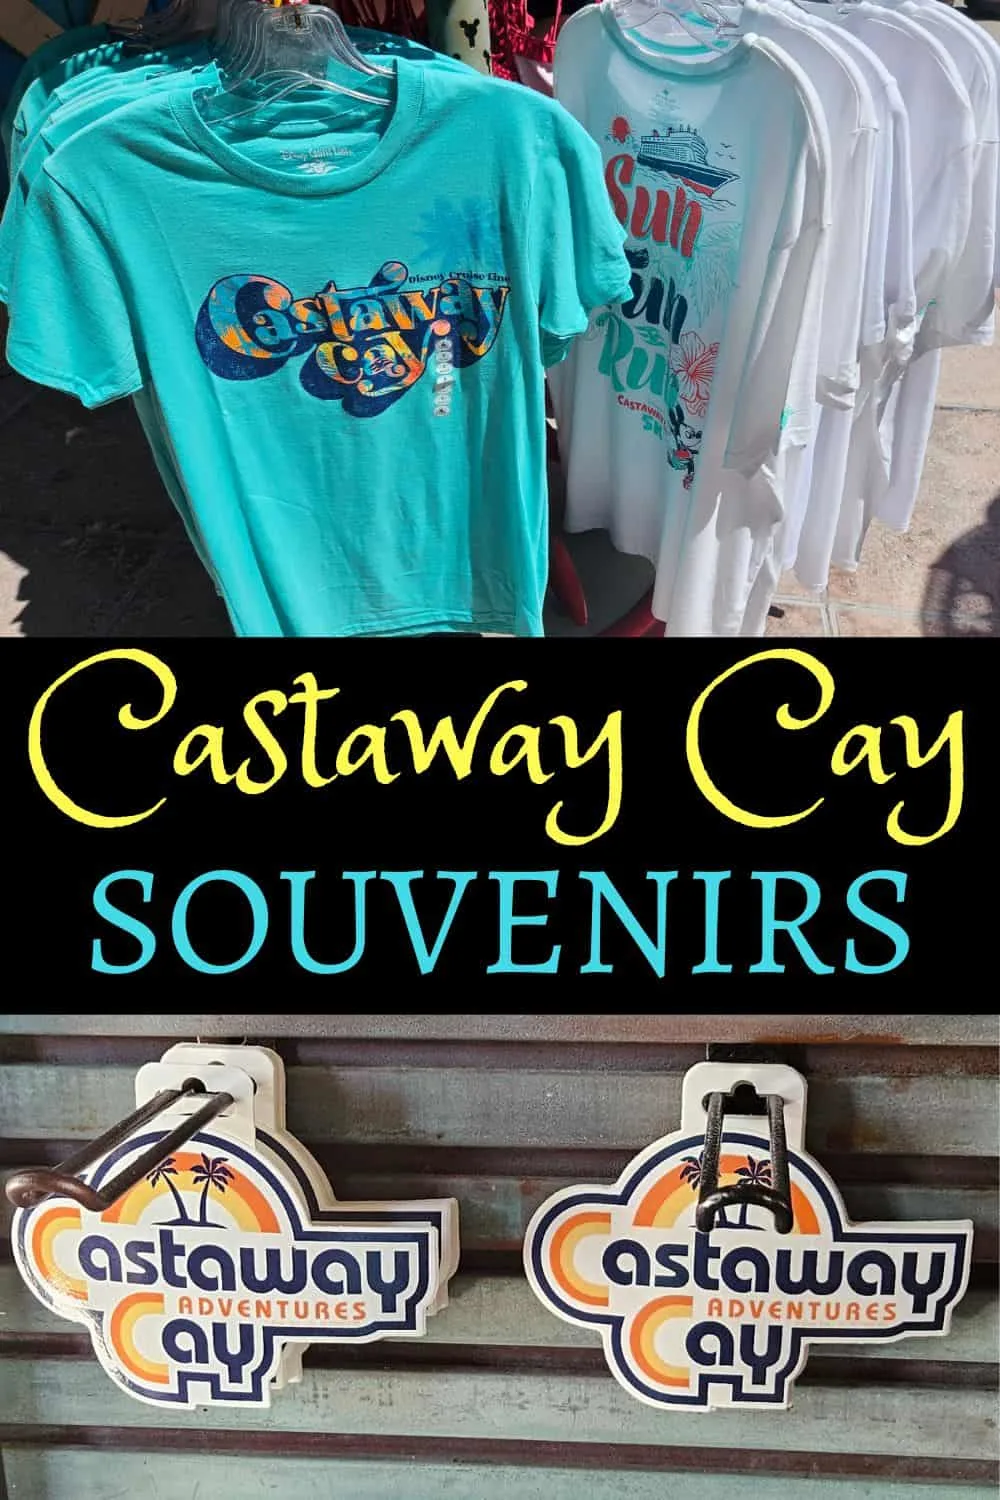 Castaway Cay Souvenirs